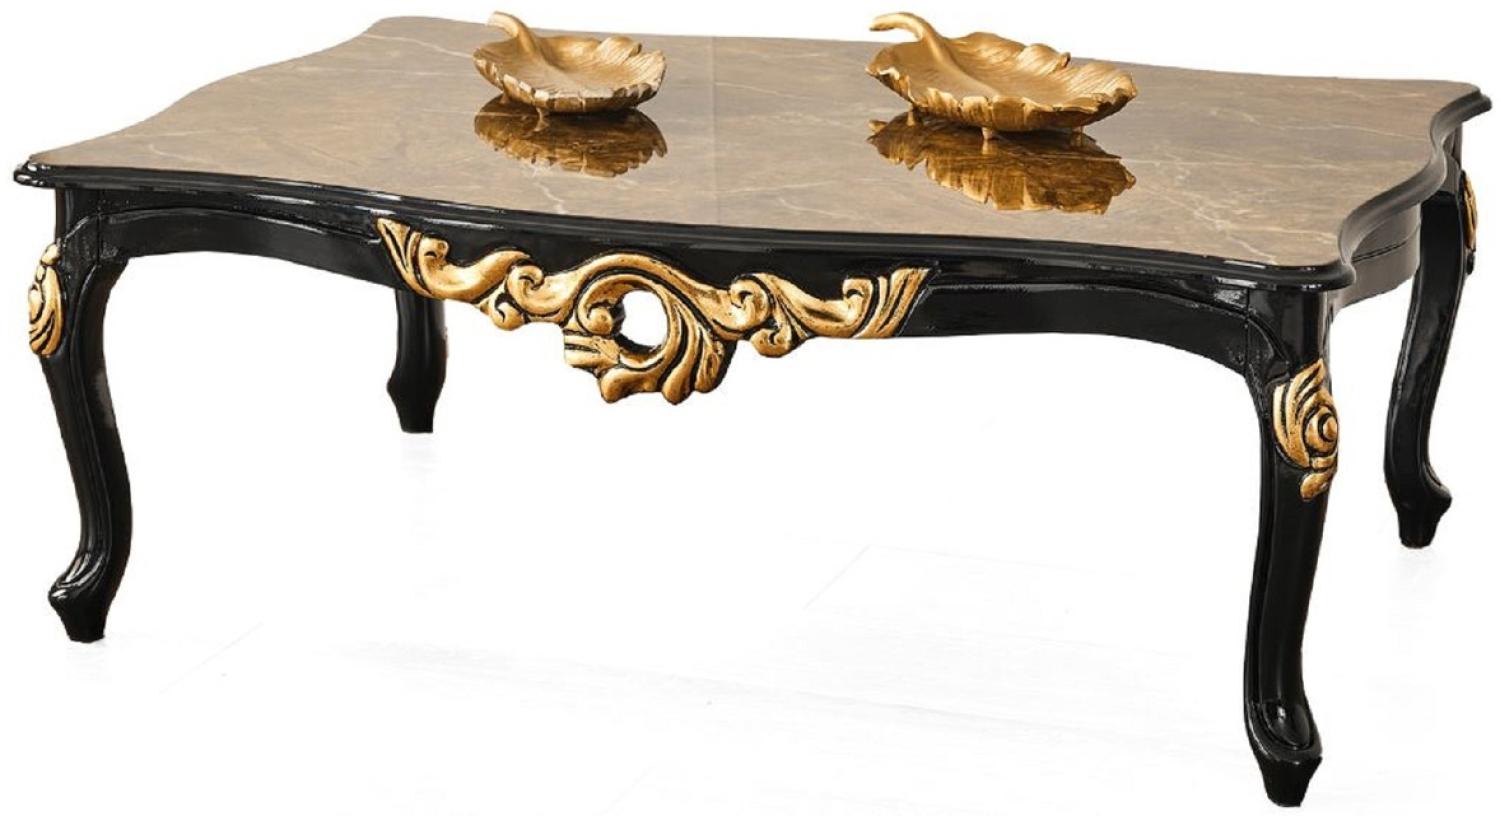 Casa Padrino Luxus Barock Couchtisch Braun / Schwarz / Gold 117 x 77 x H. 46 cm - Prunkvoller Massivholz Wohnzimmertisch mit Tischplatte in Marmoroptik - Barock Möbel Bild 1